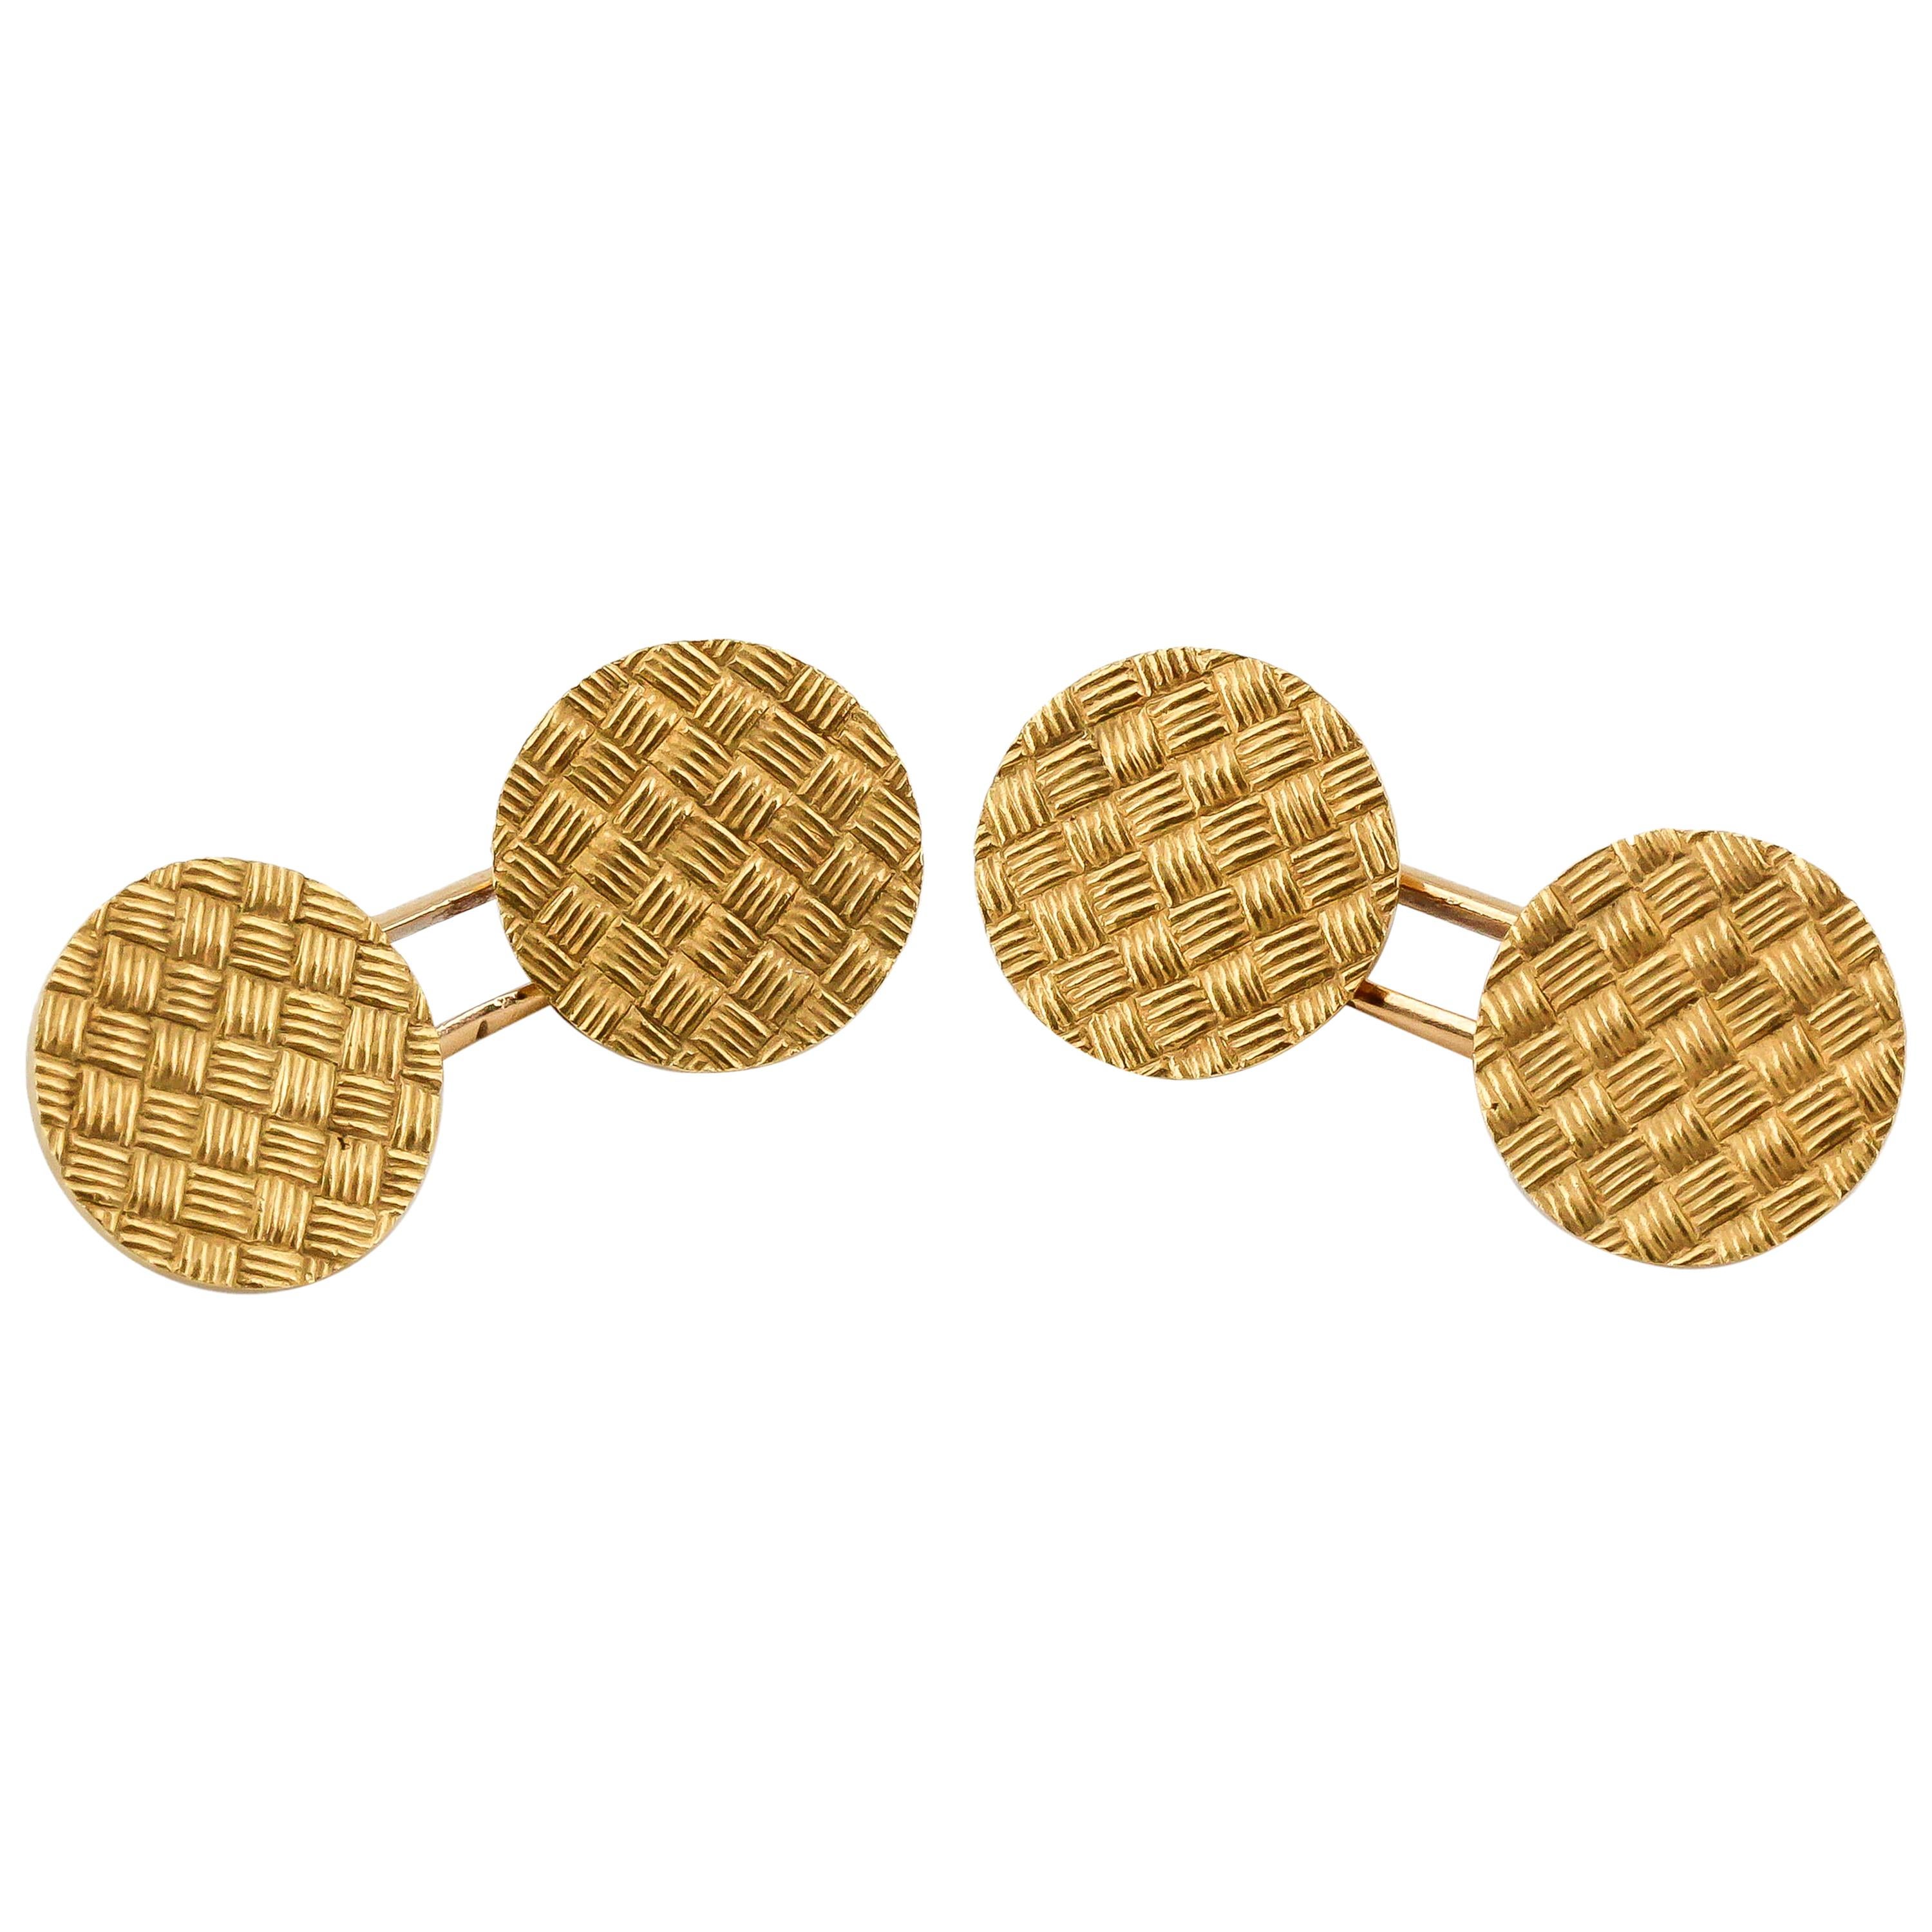 French 18 Karat Gold Basket Weave Round Cufflinks